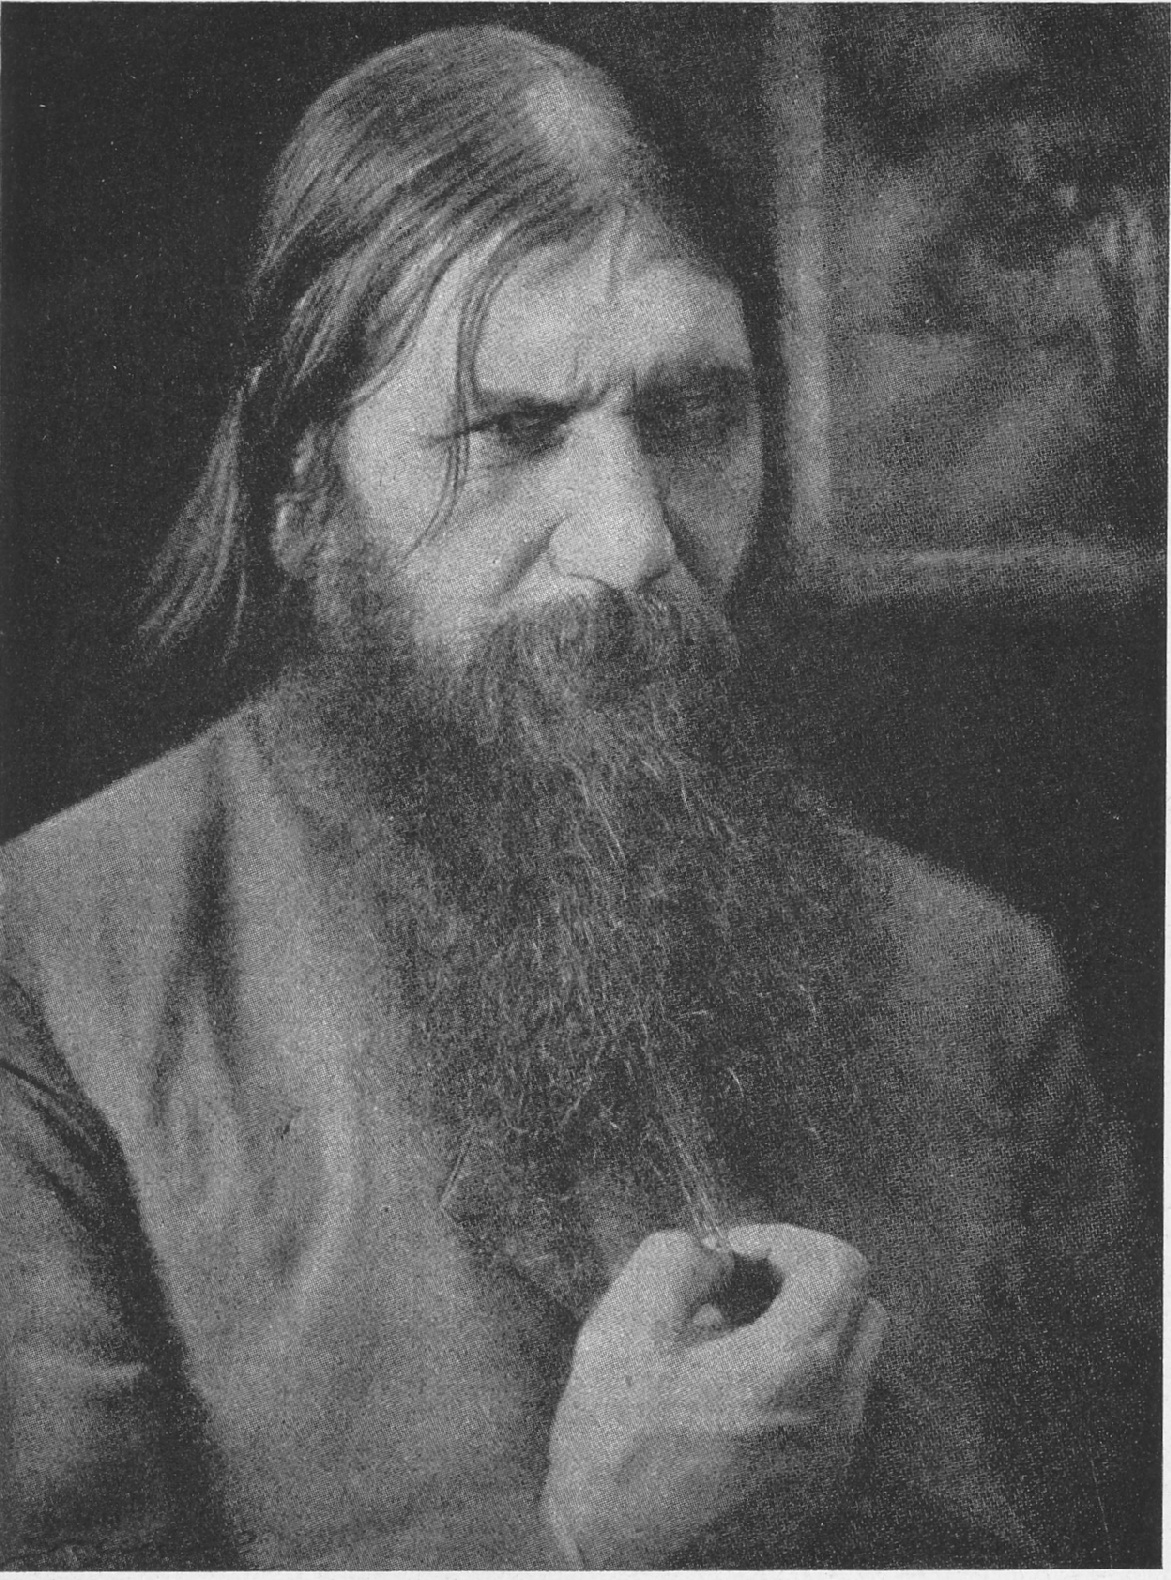 Grigorij Jefimovi Rasputin